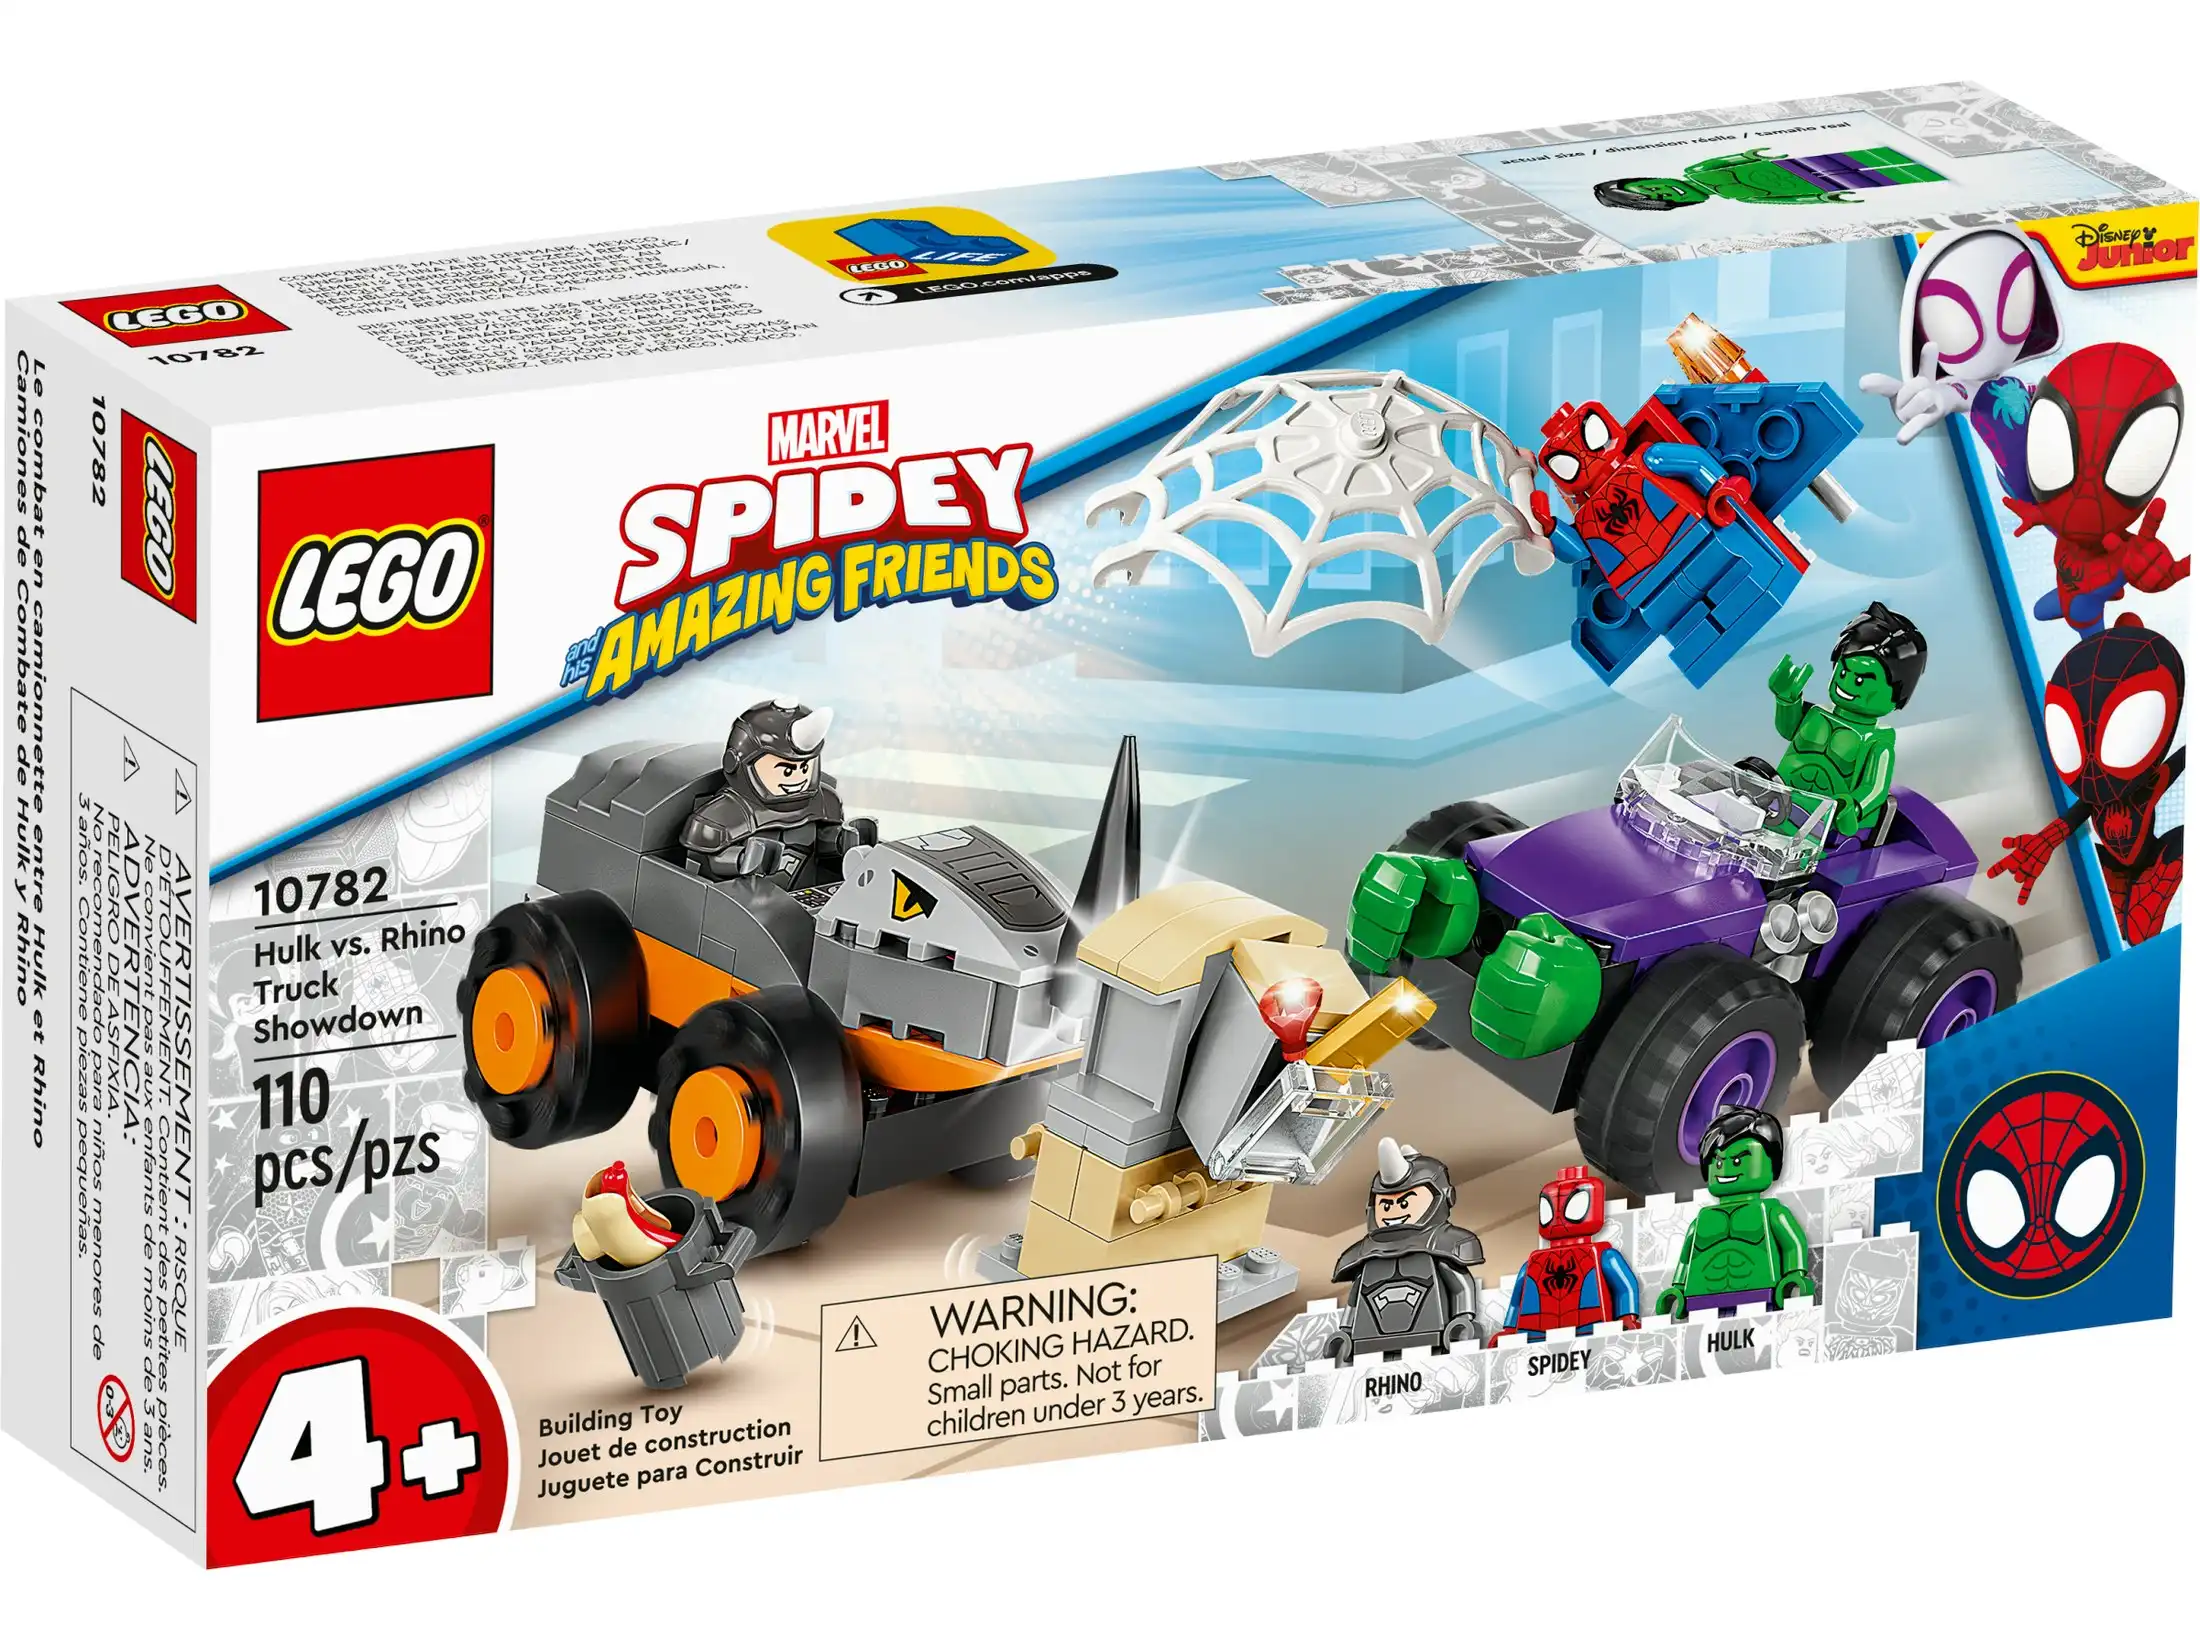 LEGO 10782 Hulk vs. Rhino Truck Showdown - Marvel Spidey 4+